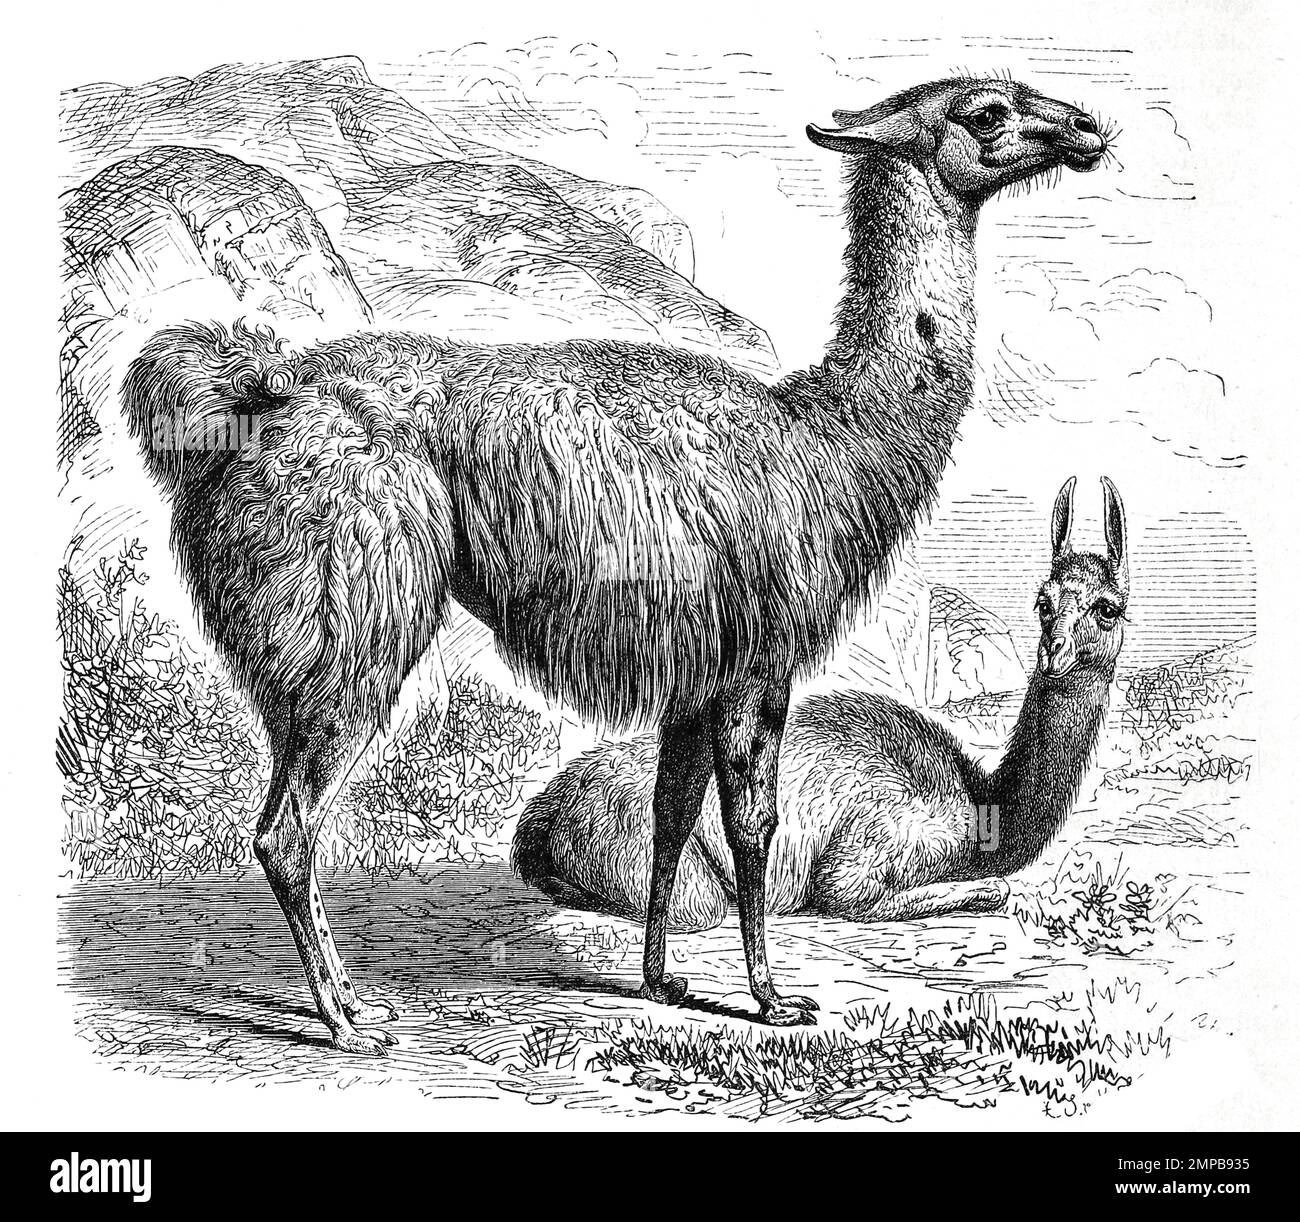 Lama, lama glama, ist eine Art der Kamele, Historisch, ristorante digitale Reproduktion von einer Vorlage aus dem 18. Jahrhundert, Foto Stock